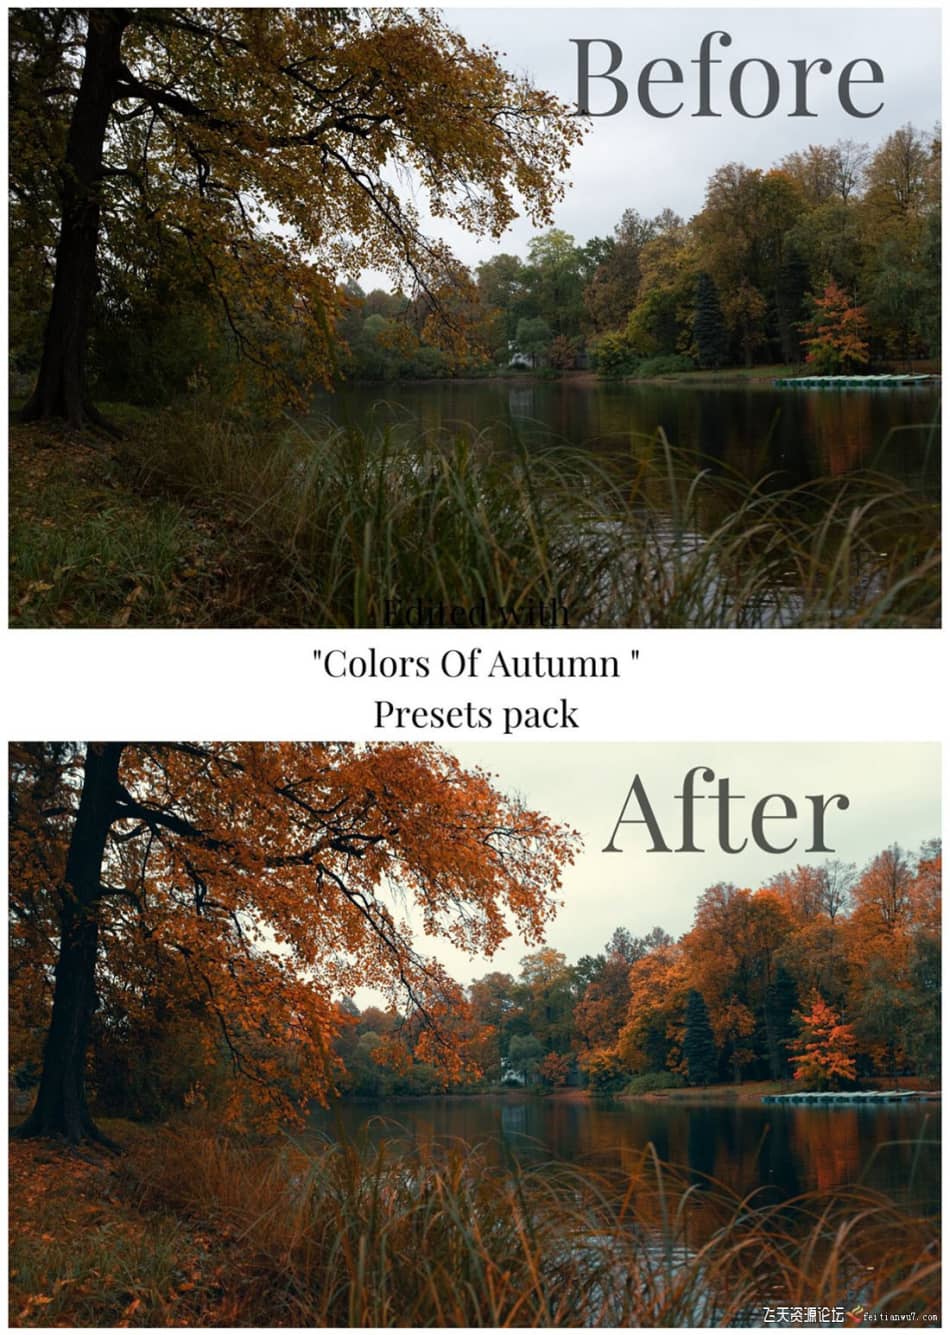 [旅拍LR预设] 街头摄影师 Viktor Balaguer 秋天的色彩Lightroom预设 Colors Of Autumn LR预设 第5张